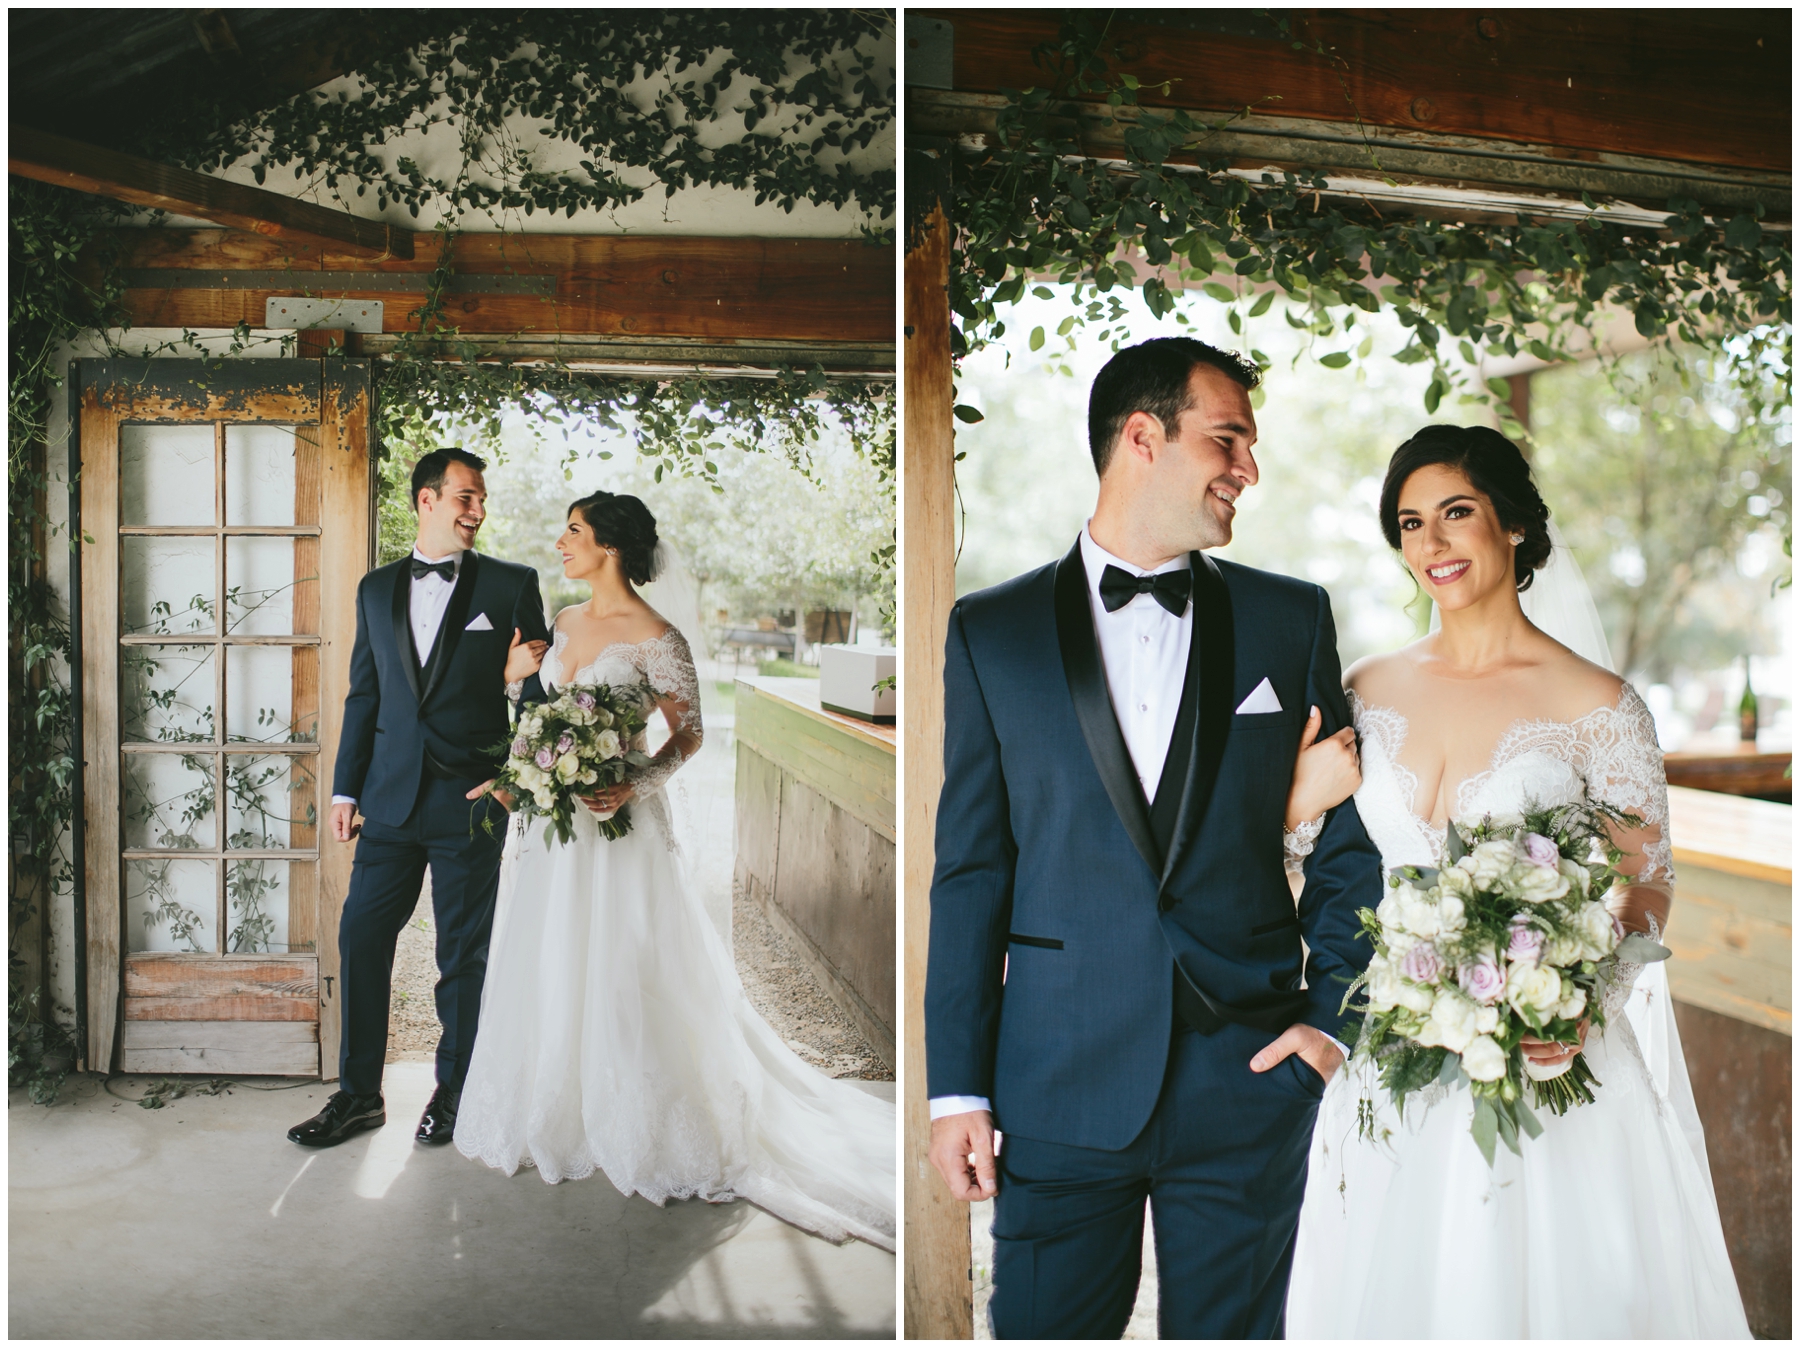 Tara + Ricky's Wedding at Pageo Lavender Farm - Kelly Boitano Photography